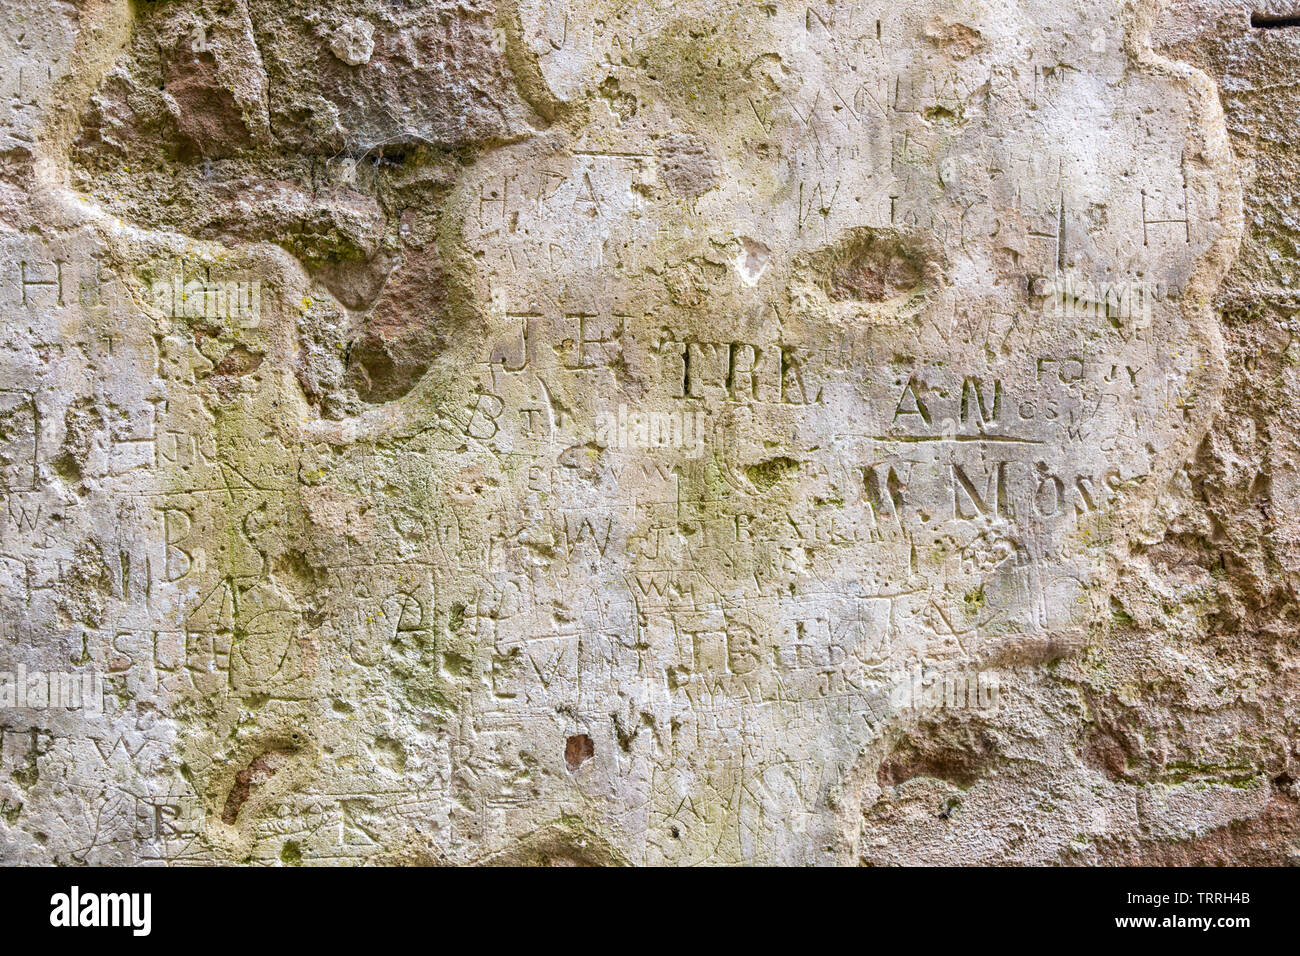 Les noms rayés dans un mur de plâtre, d'il y a des siècles, Brougham Castle, Penrith, Cumbria UK Banque D'Images